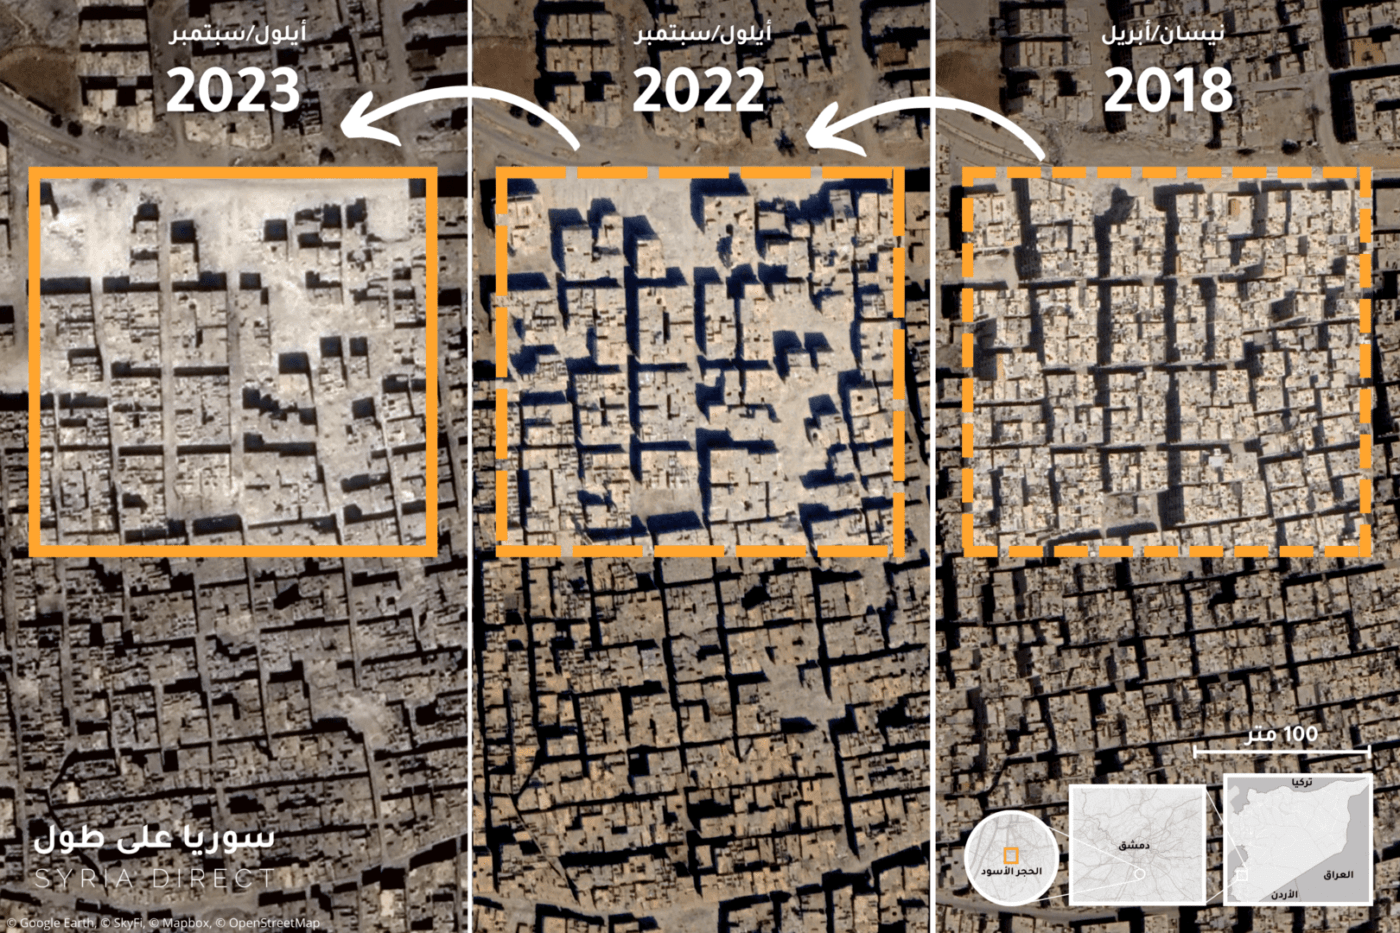 ثلاثة صور عبر الأقمار الصناعية تظهر هدم المباني في مدينة الحجر الأسود بريف دمشق، بعد سيطرة قوات النظام عليها في أيار/ مايو 2018 حتى الآن (سوريا على طول، Google Earth ،SkyFi)